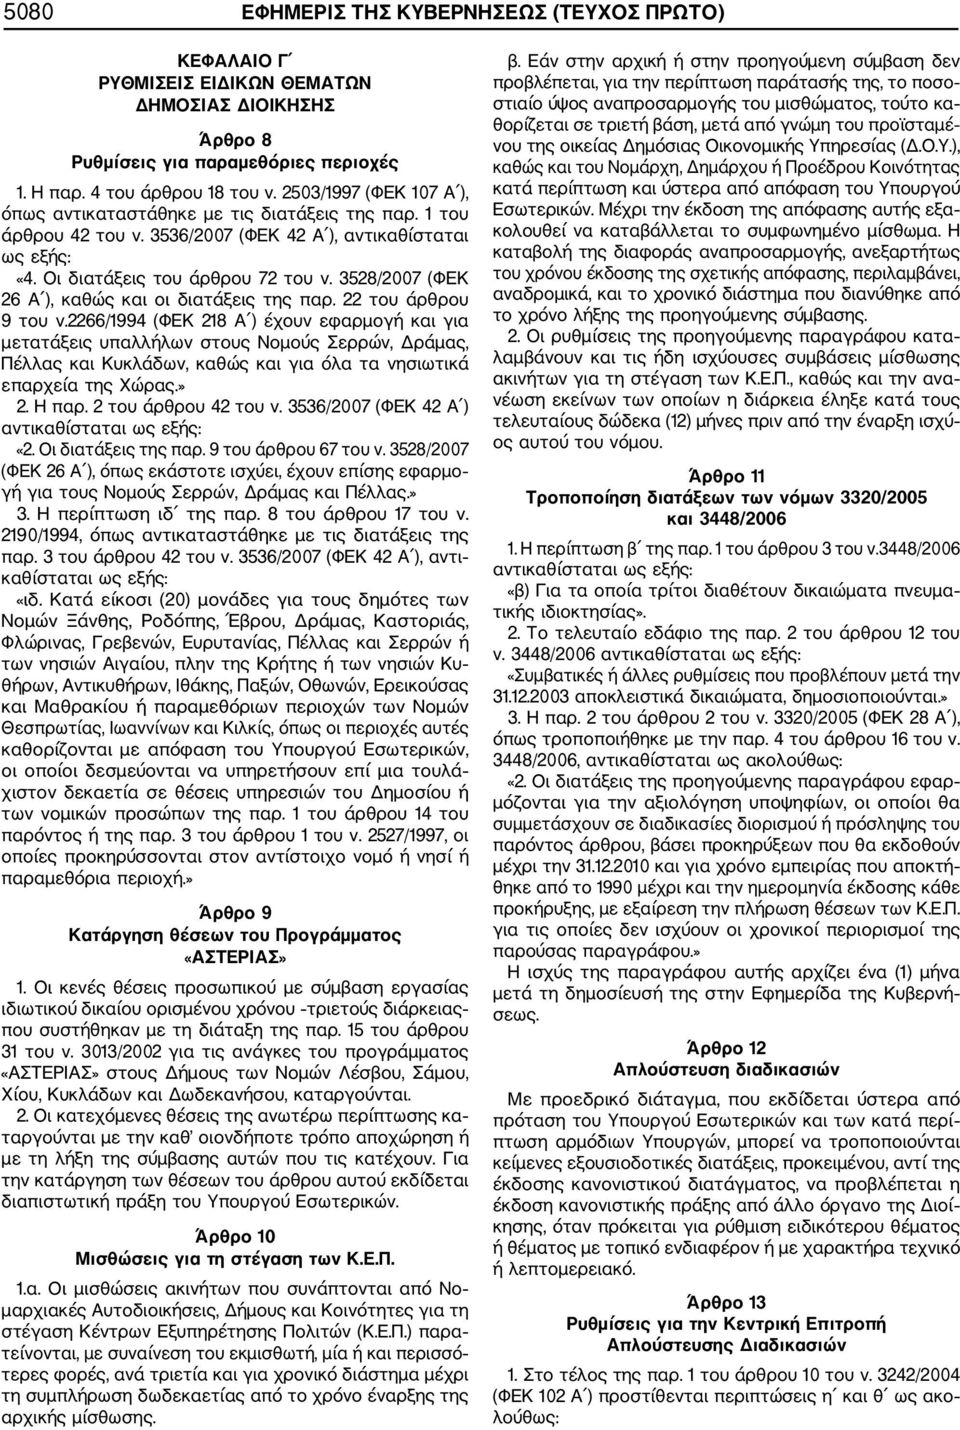 3528/2007 (ΦΕΚ 26 Α ), καθώς και οι διατάξεις της παρ. 22 του άρθρου 9 του ν.